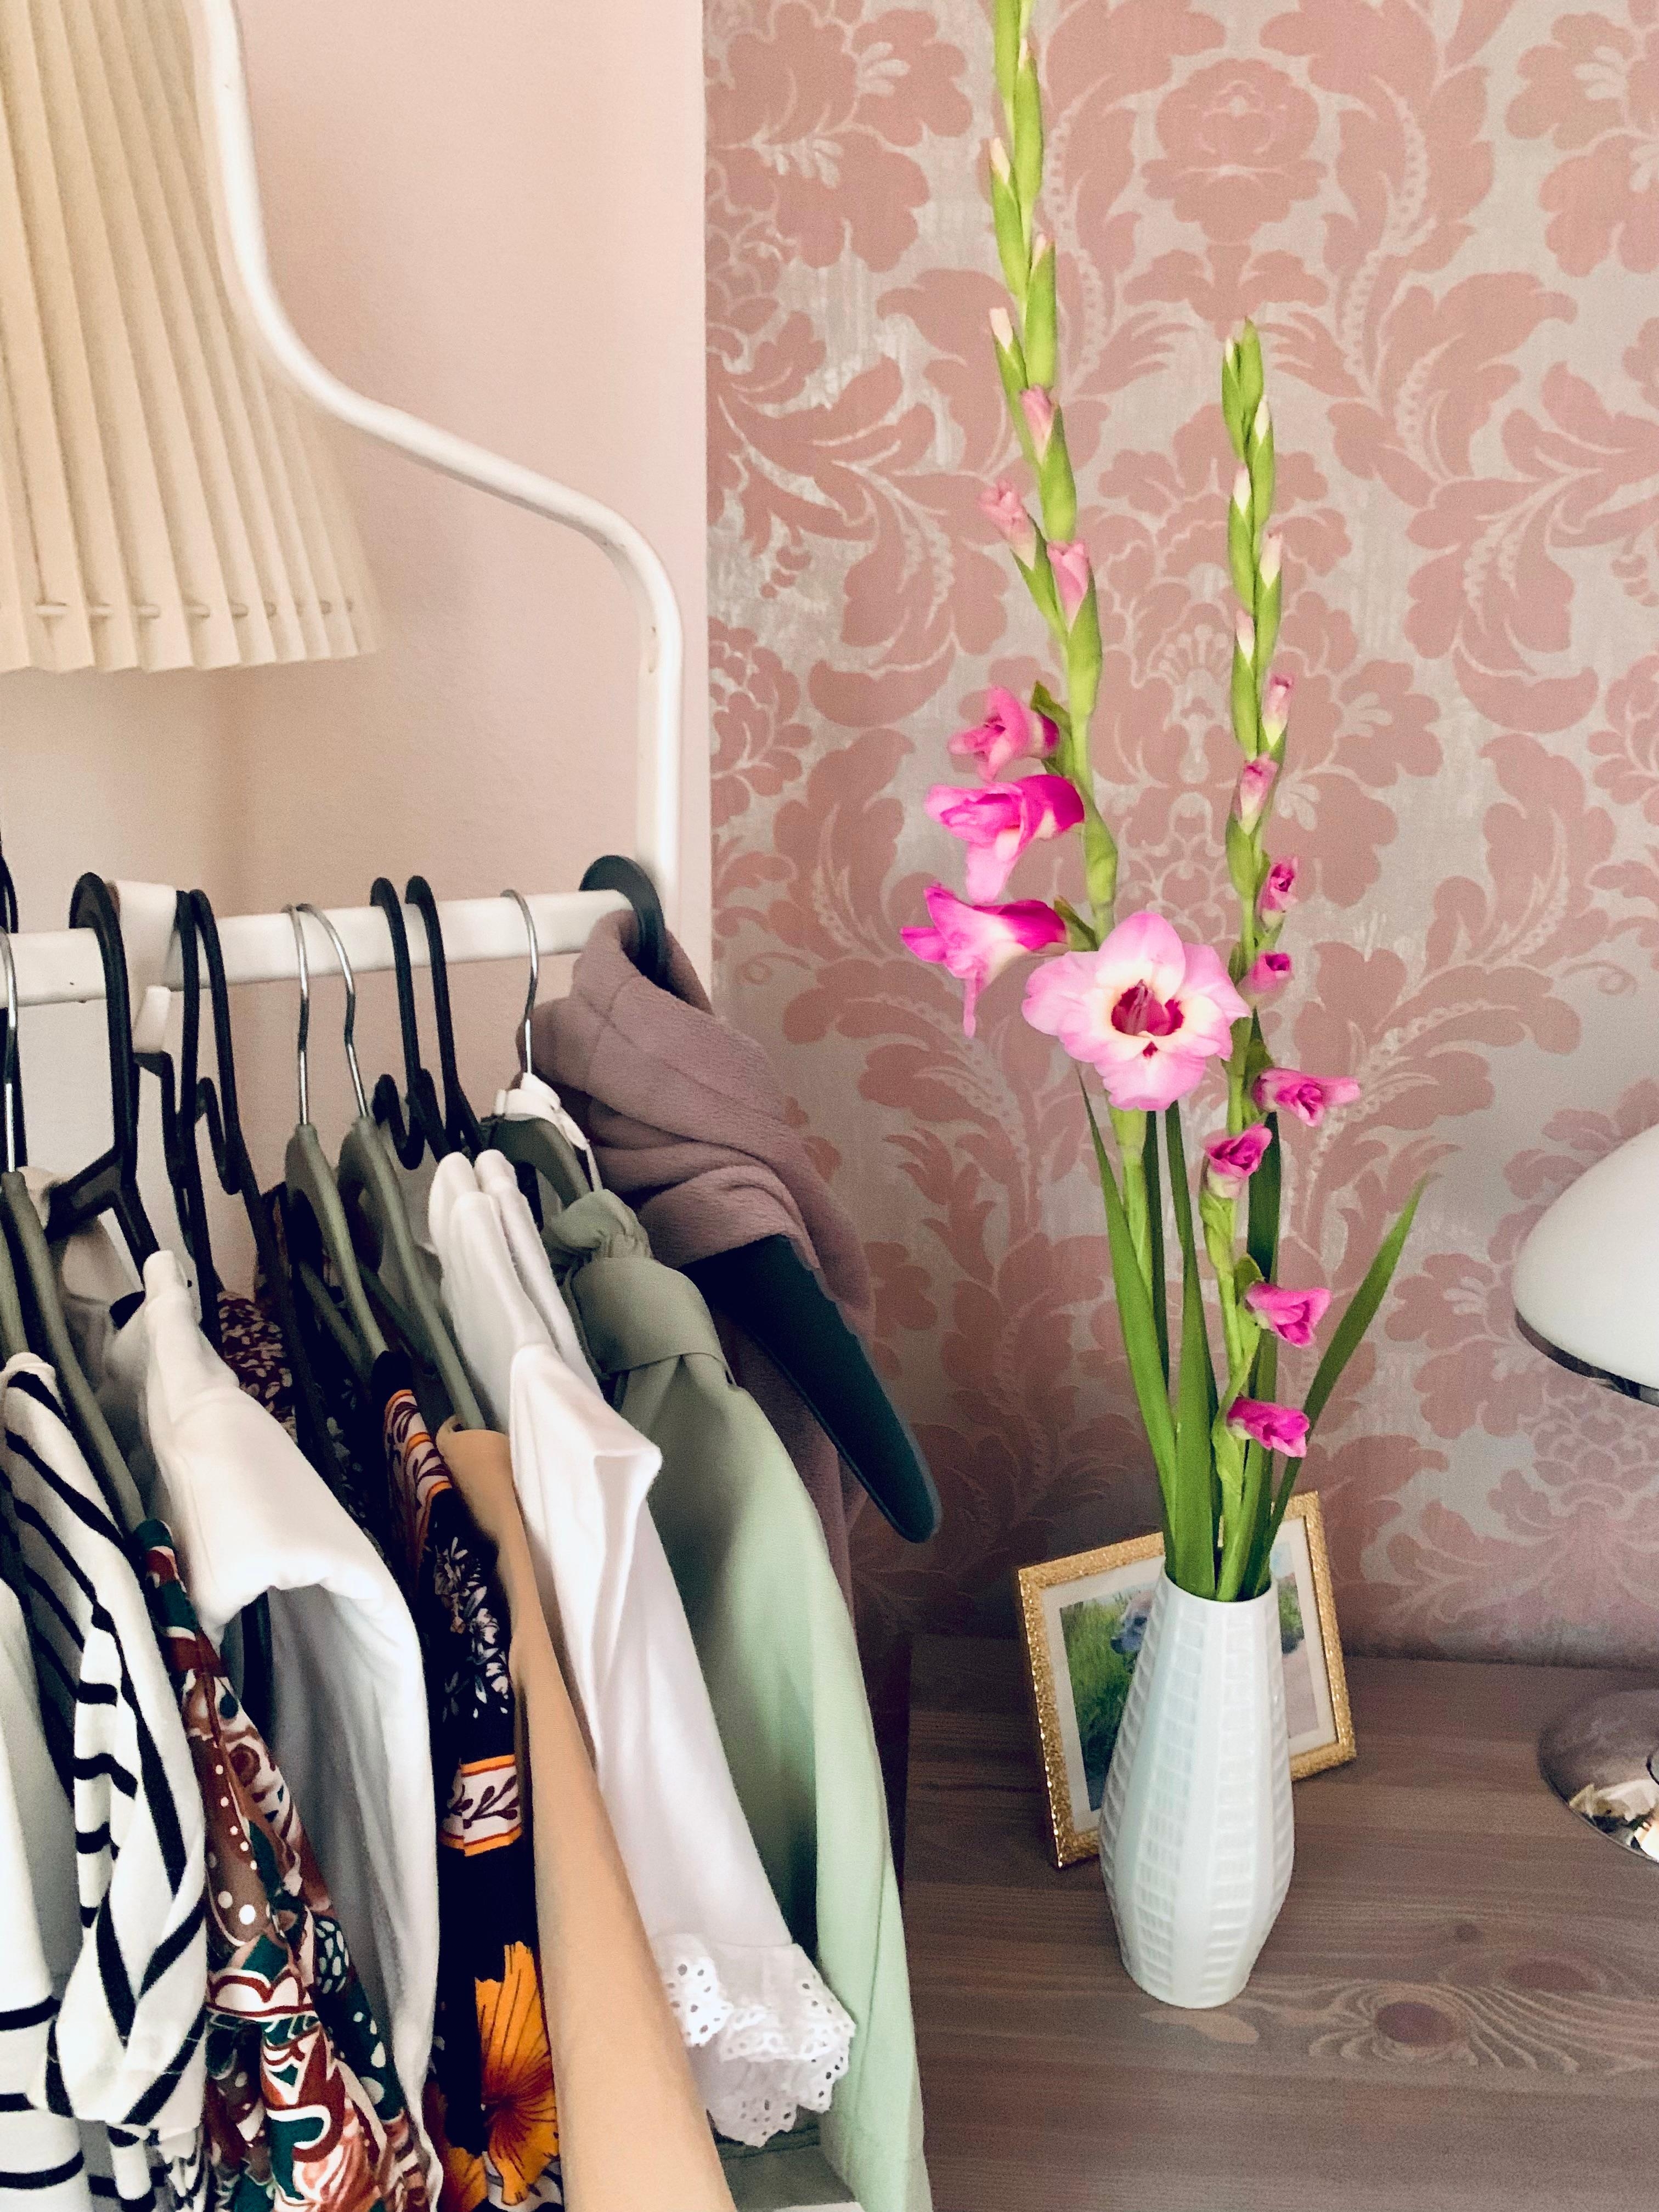 Gladiolen 💕
Sommer Blumen 

#vase #flower #tapete #lampe #kleiderständer #sommerkleider 